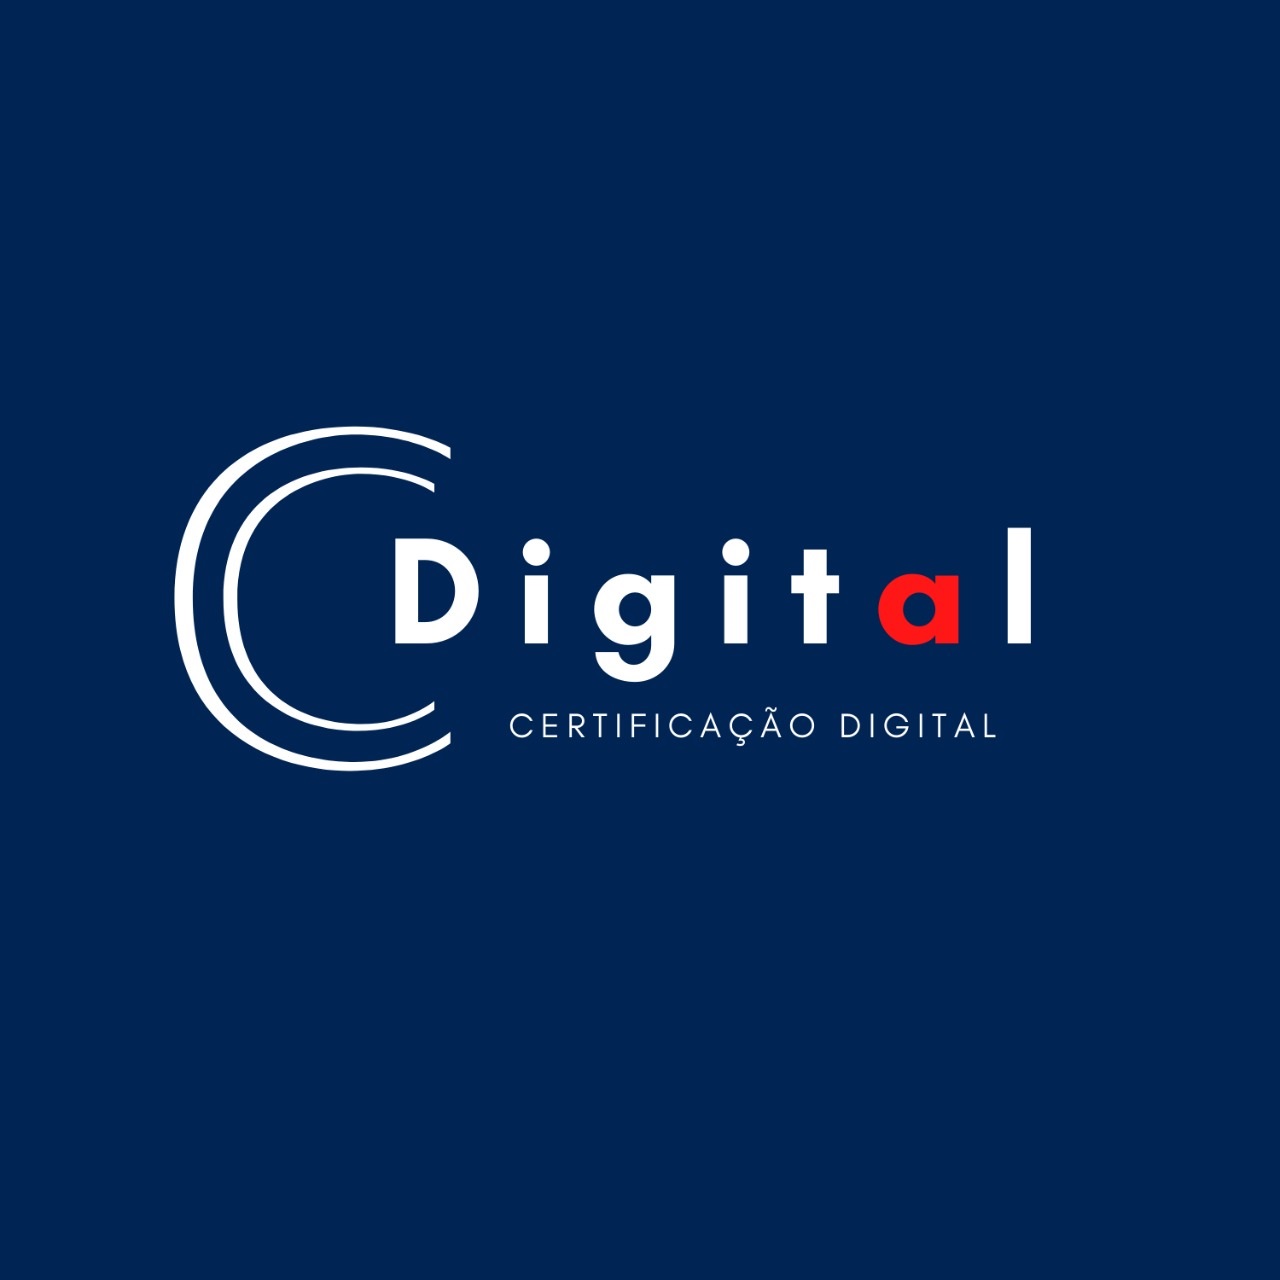 Logotipo do parceiro AR Cdigital 